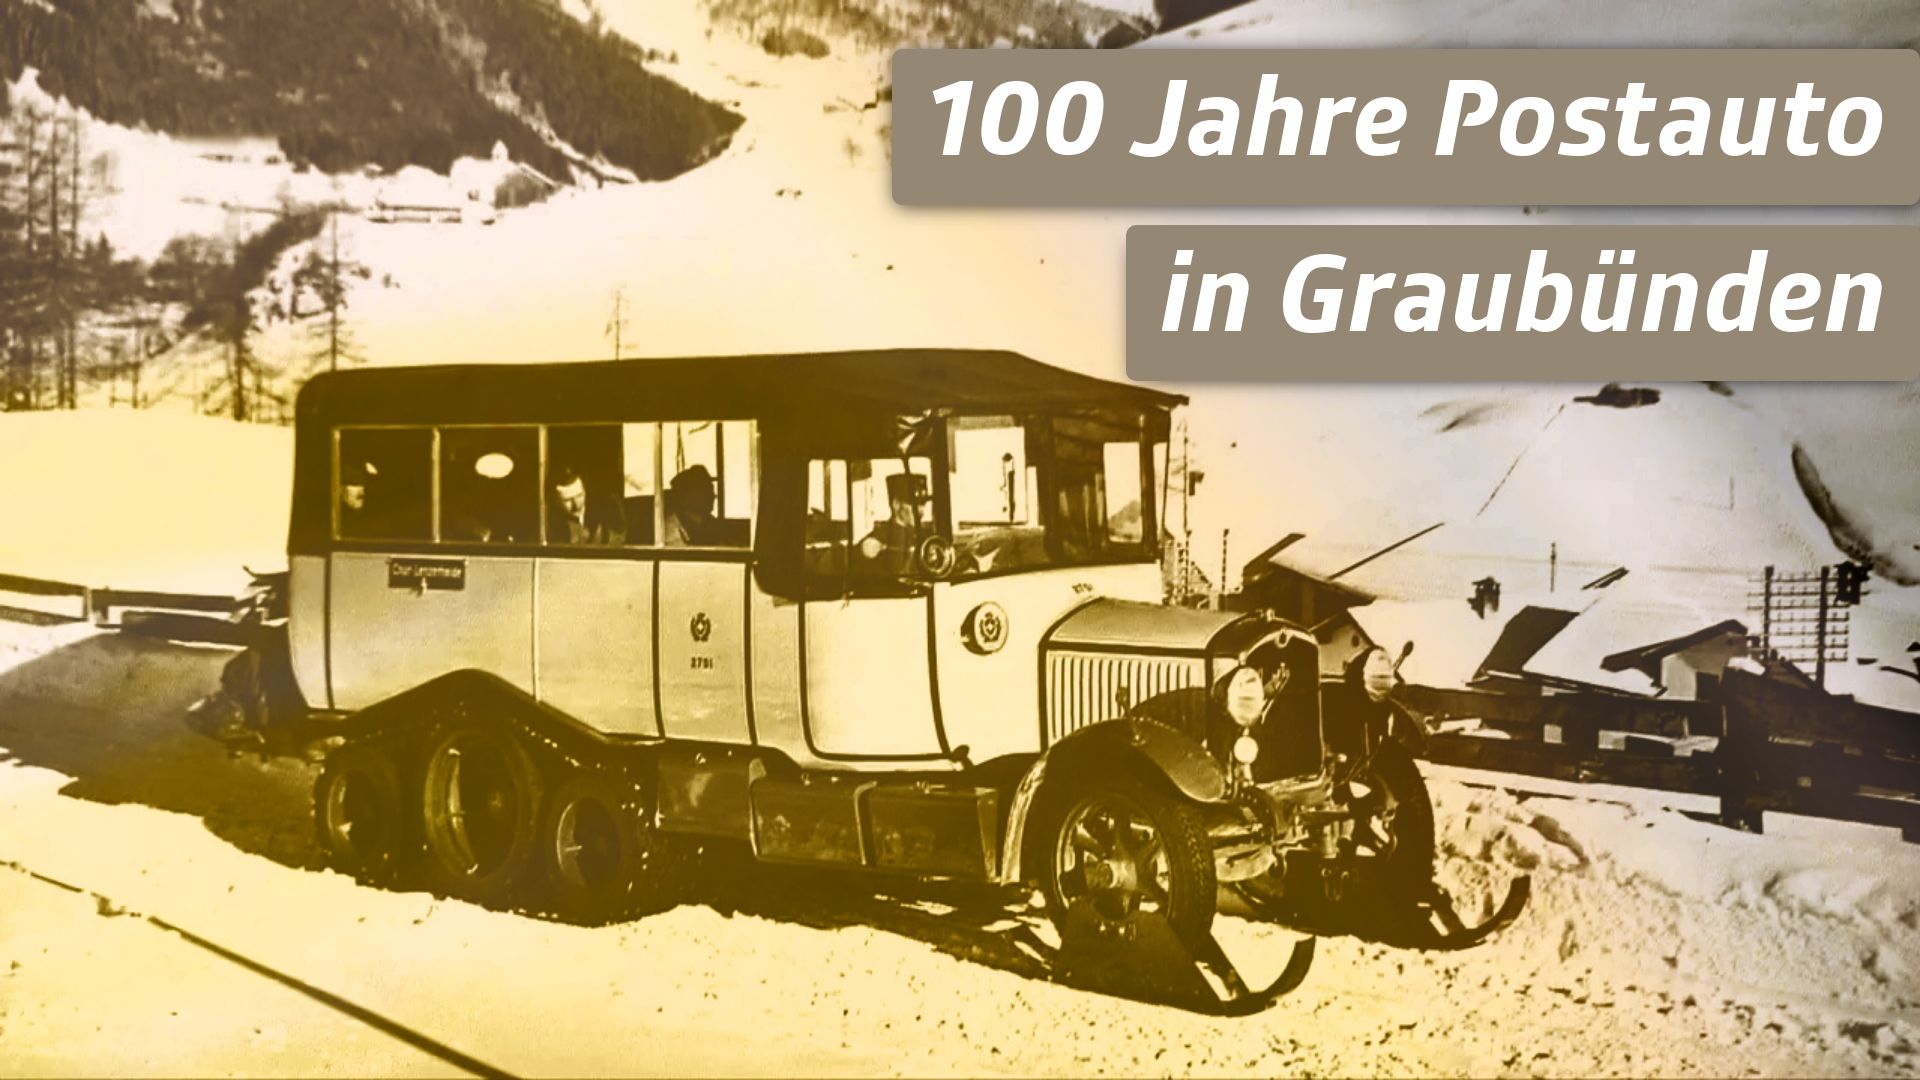 100 Jahre Postauto in Graubünden